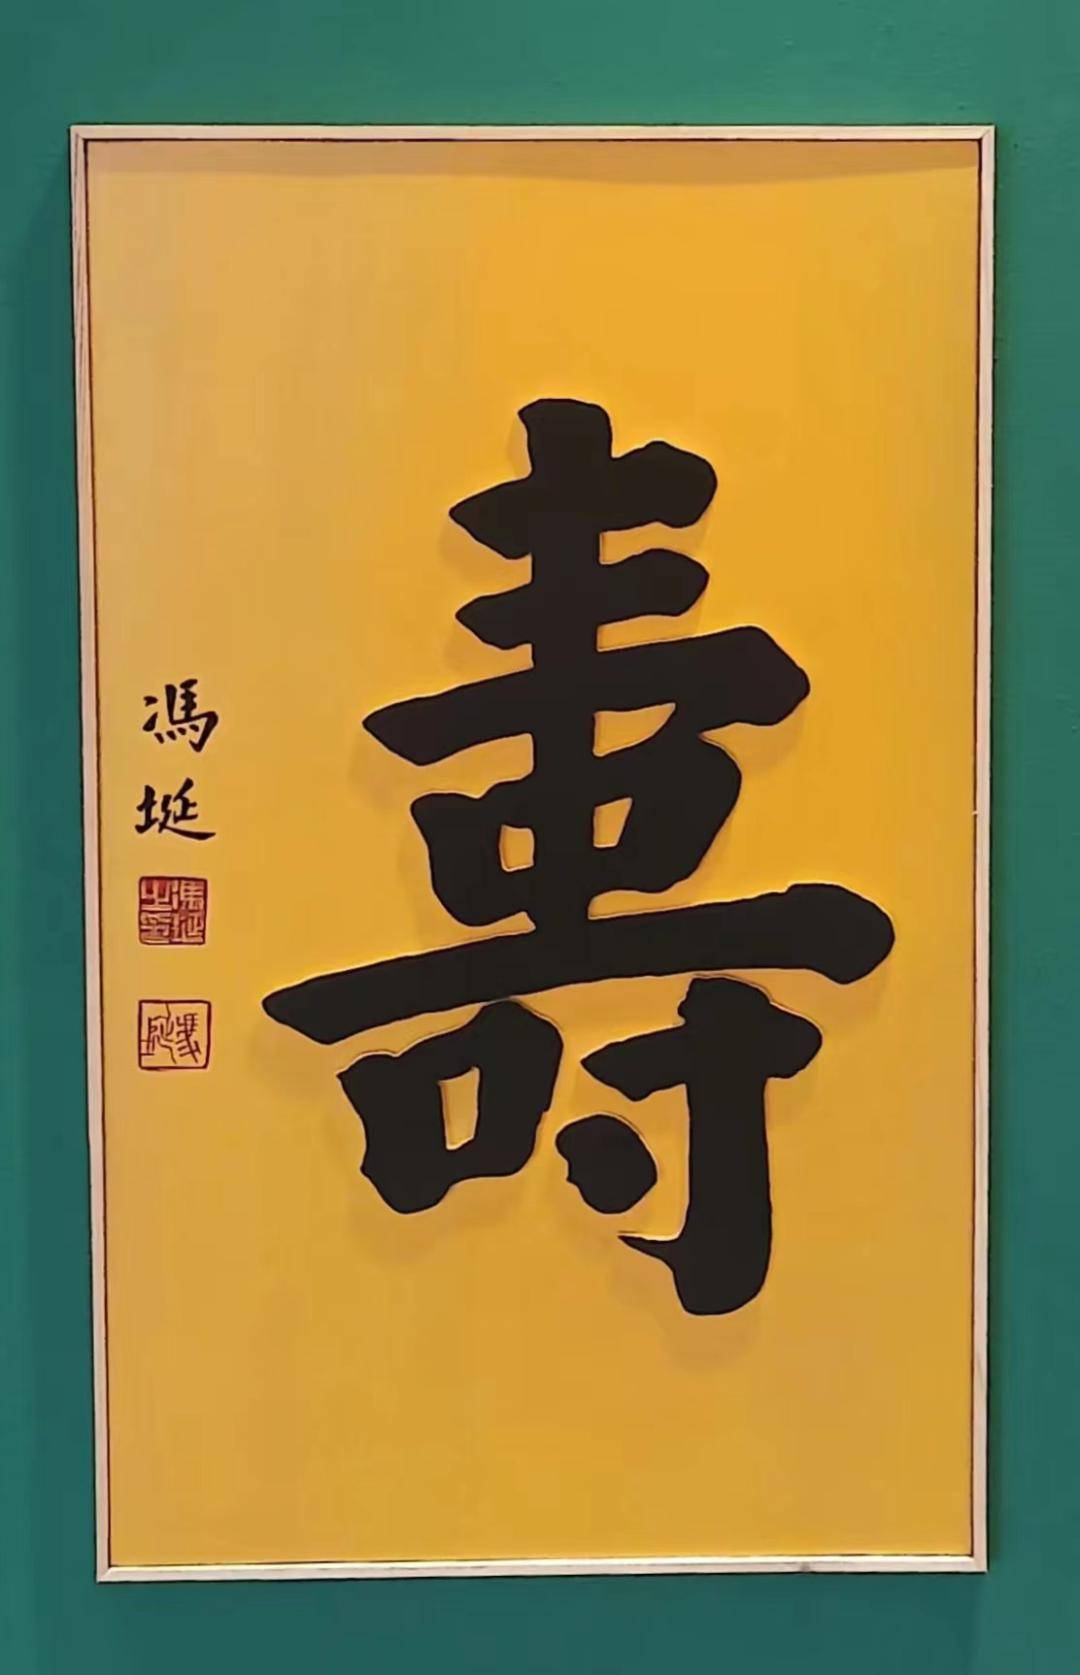 人寿年丰杯工艺美术精品大奖赛暨作品展在辽阳博物馆举行